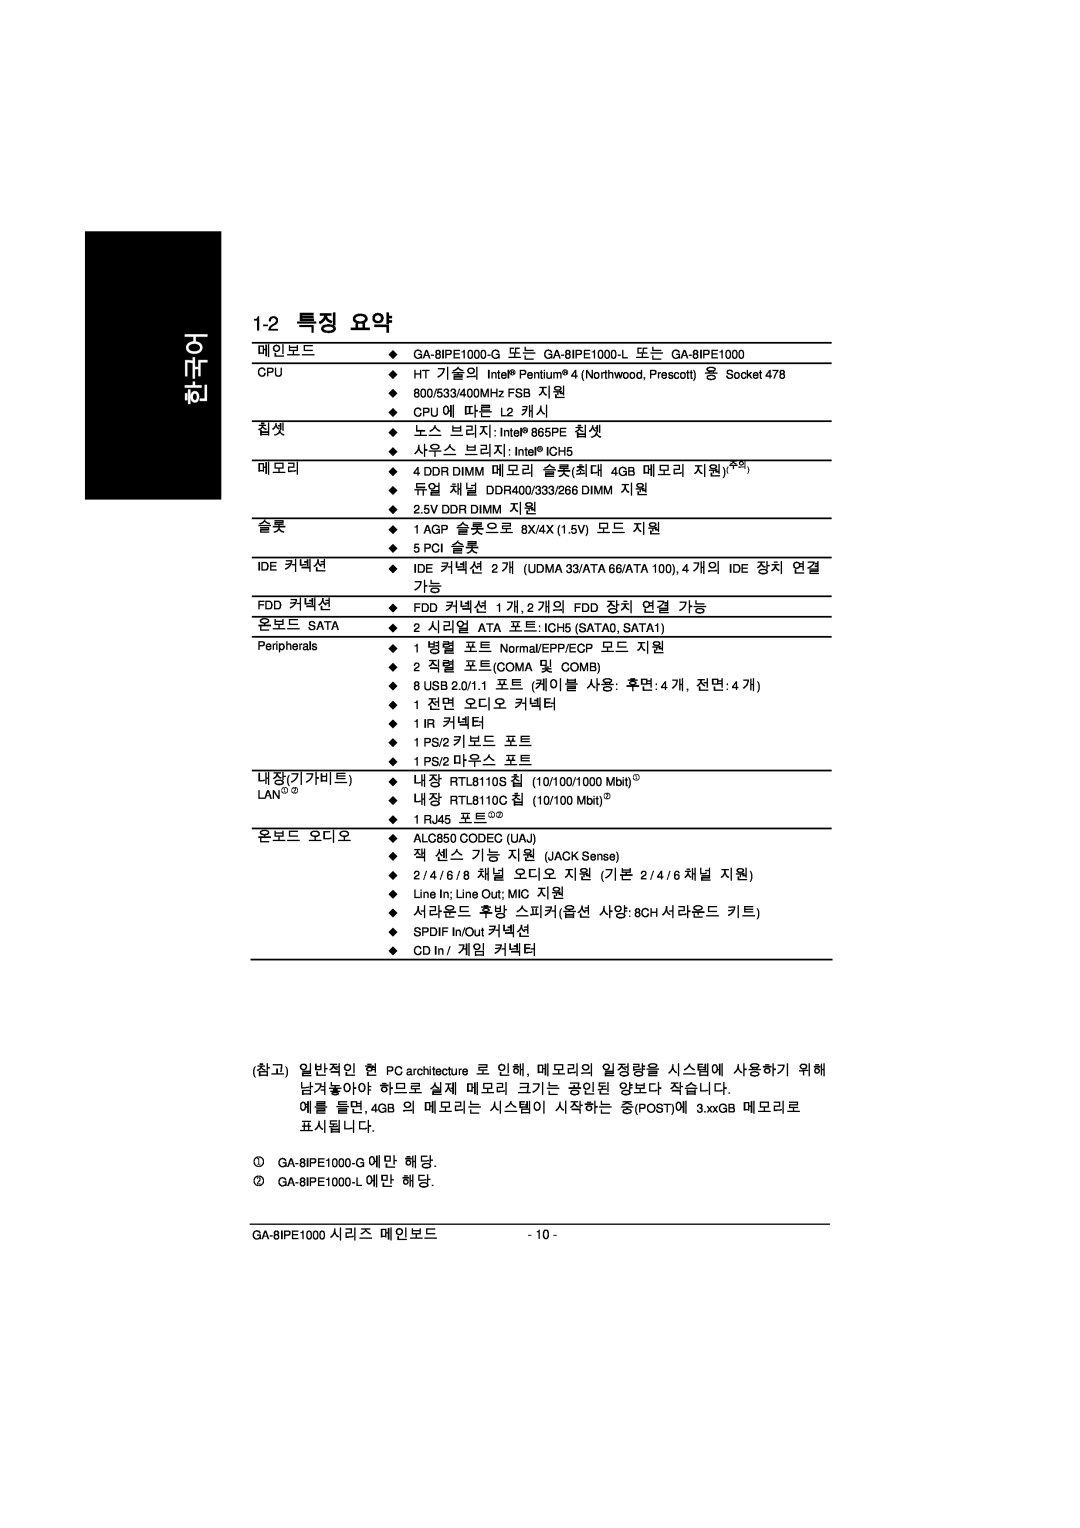 Intel GA-8IPE1000 manual 1-2 특징 요약 